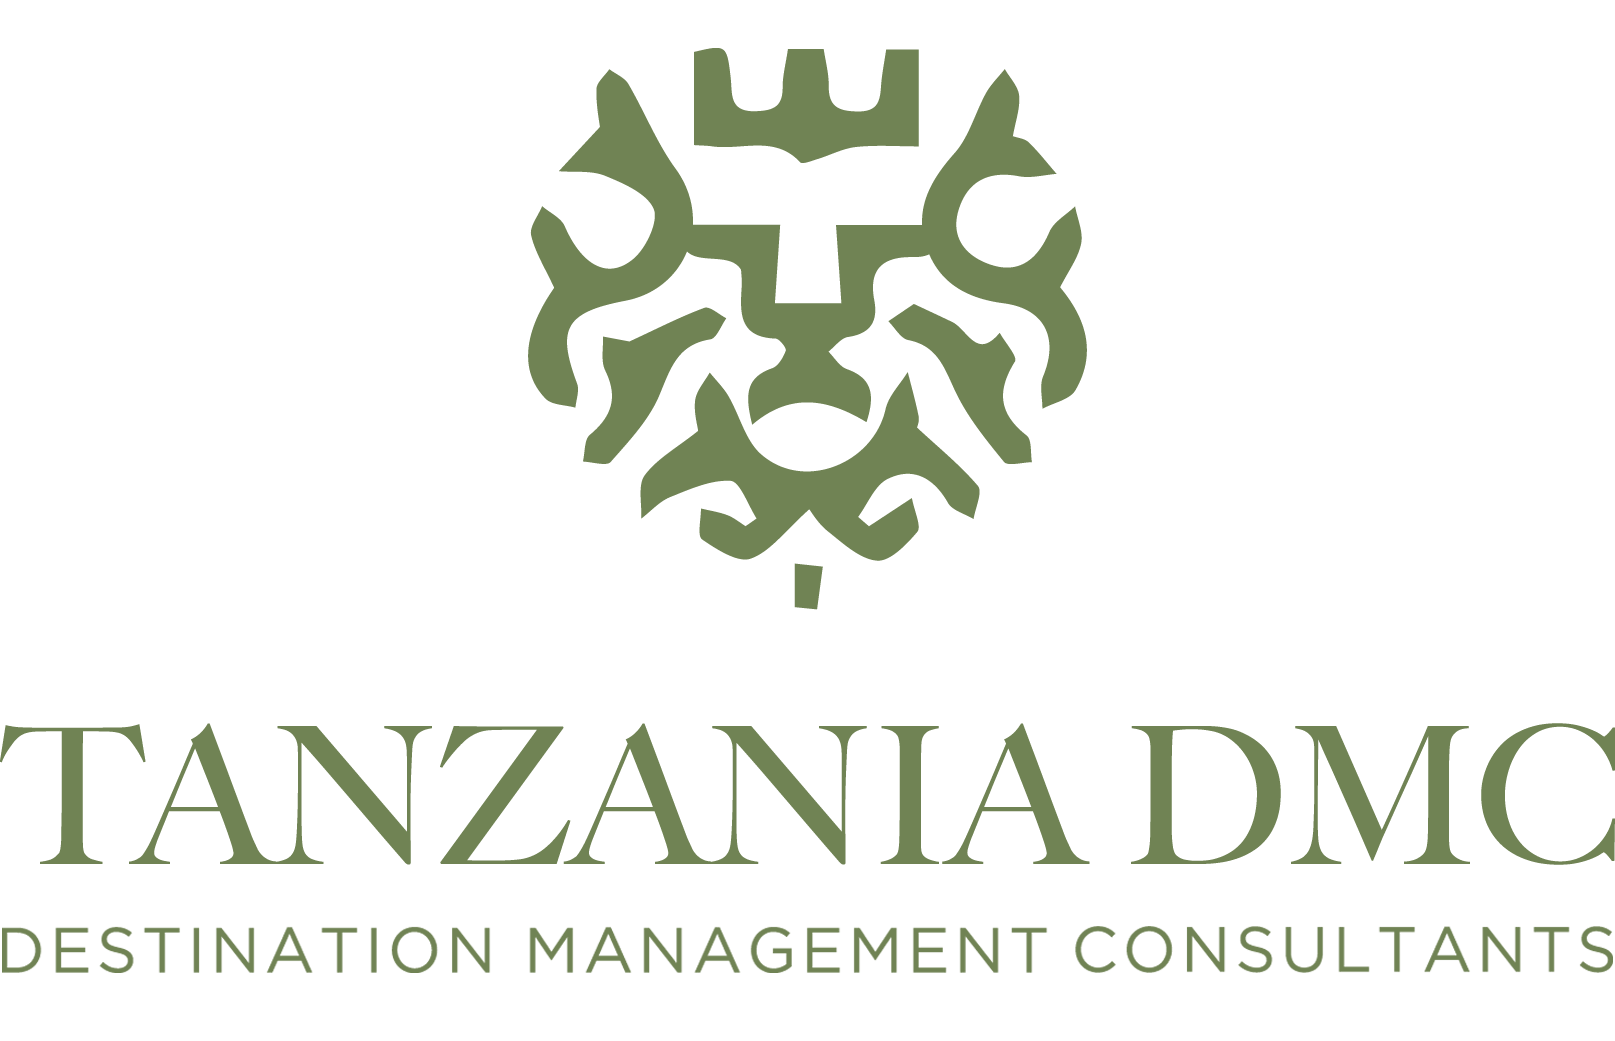 TanzaniaDMC